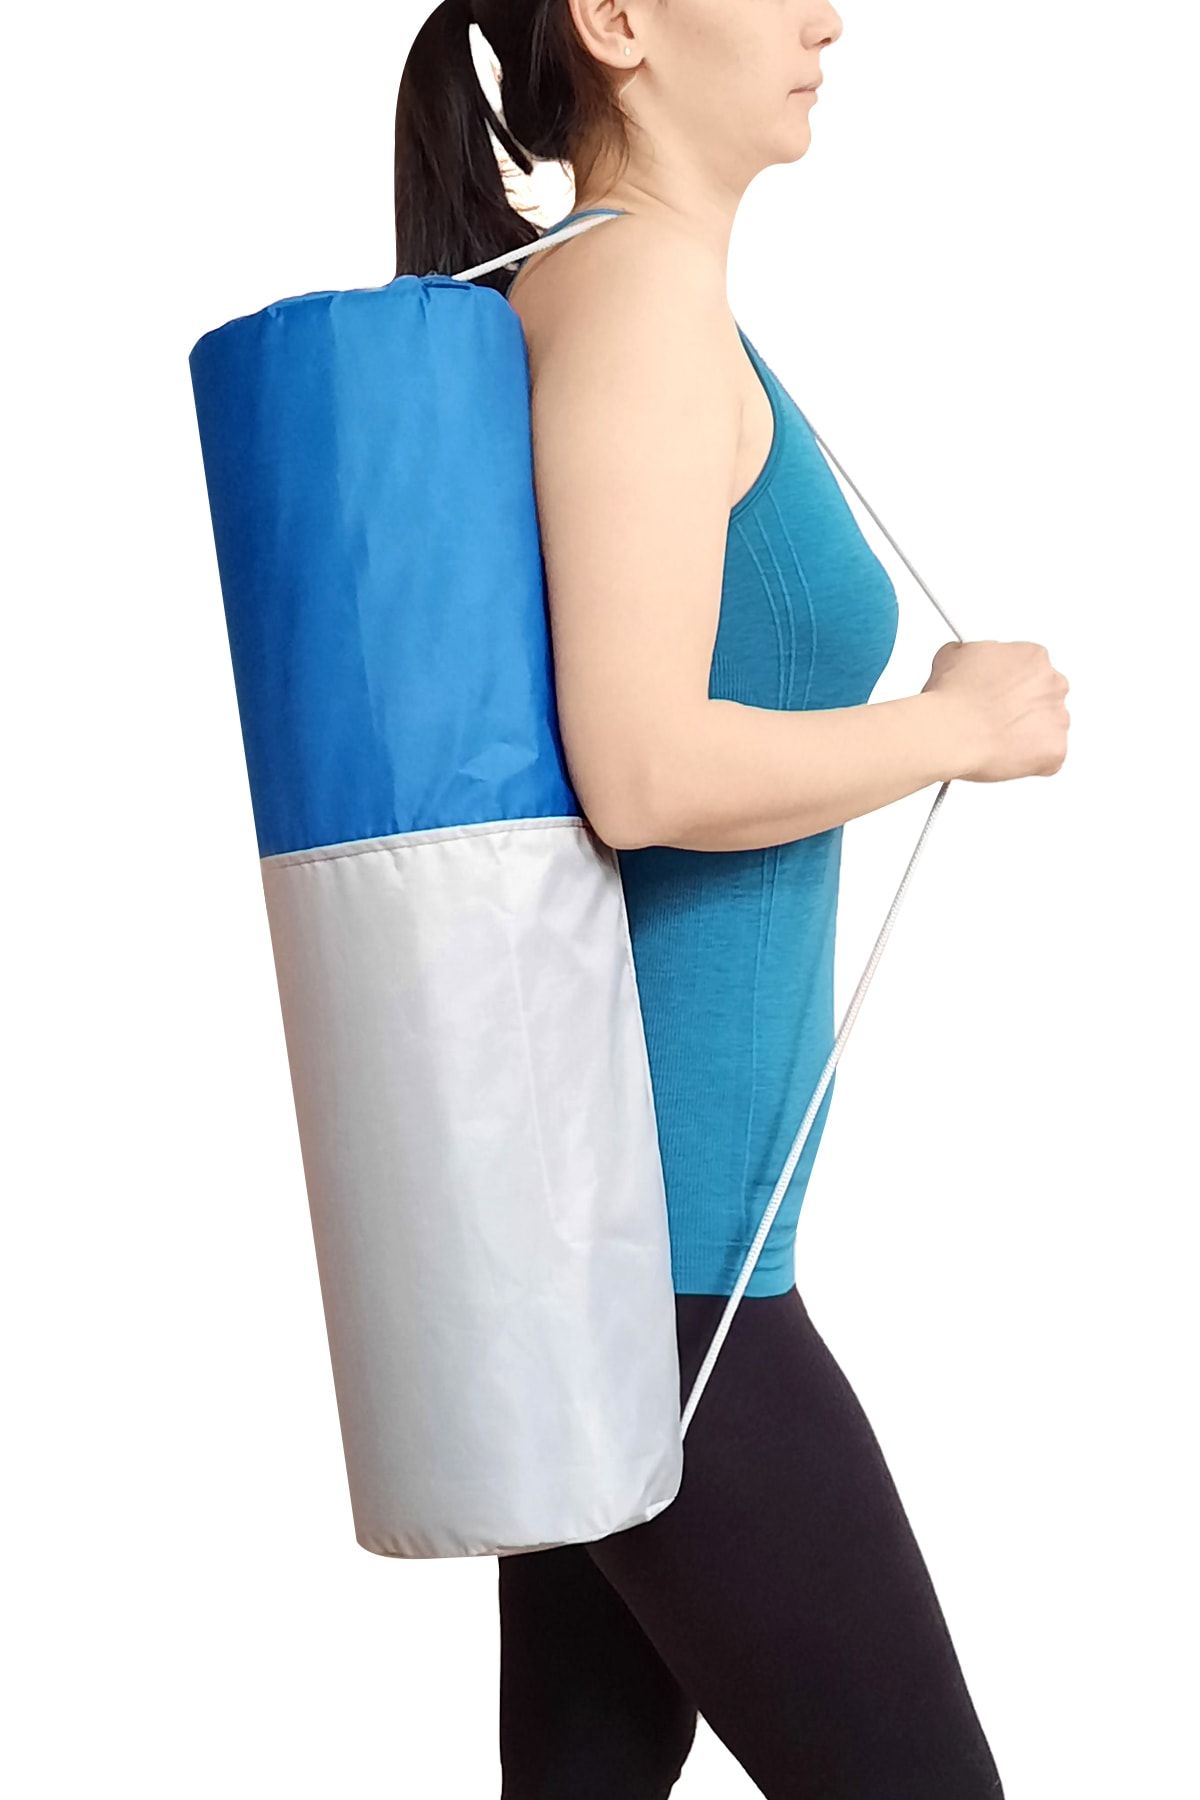 EgeOnline Pilates Minderi Yoga Matı Taşıma Çantası Kılıf 70x17,5cm